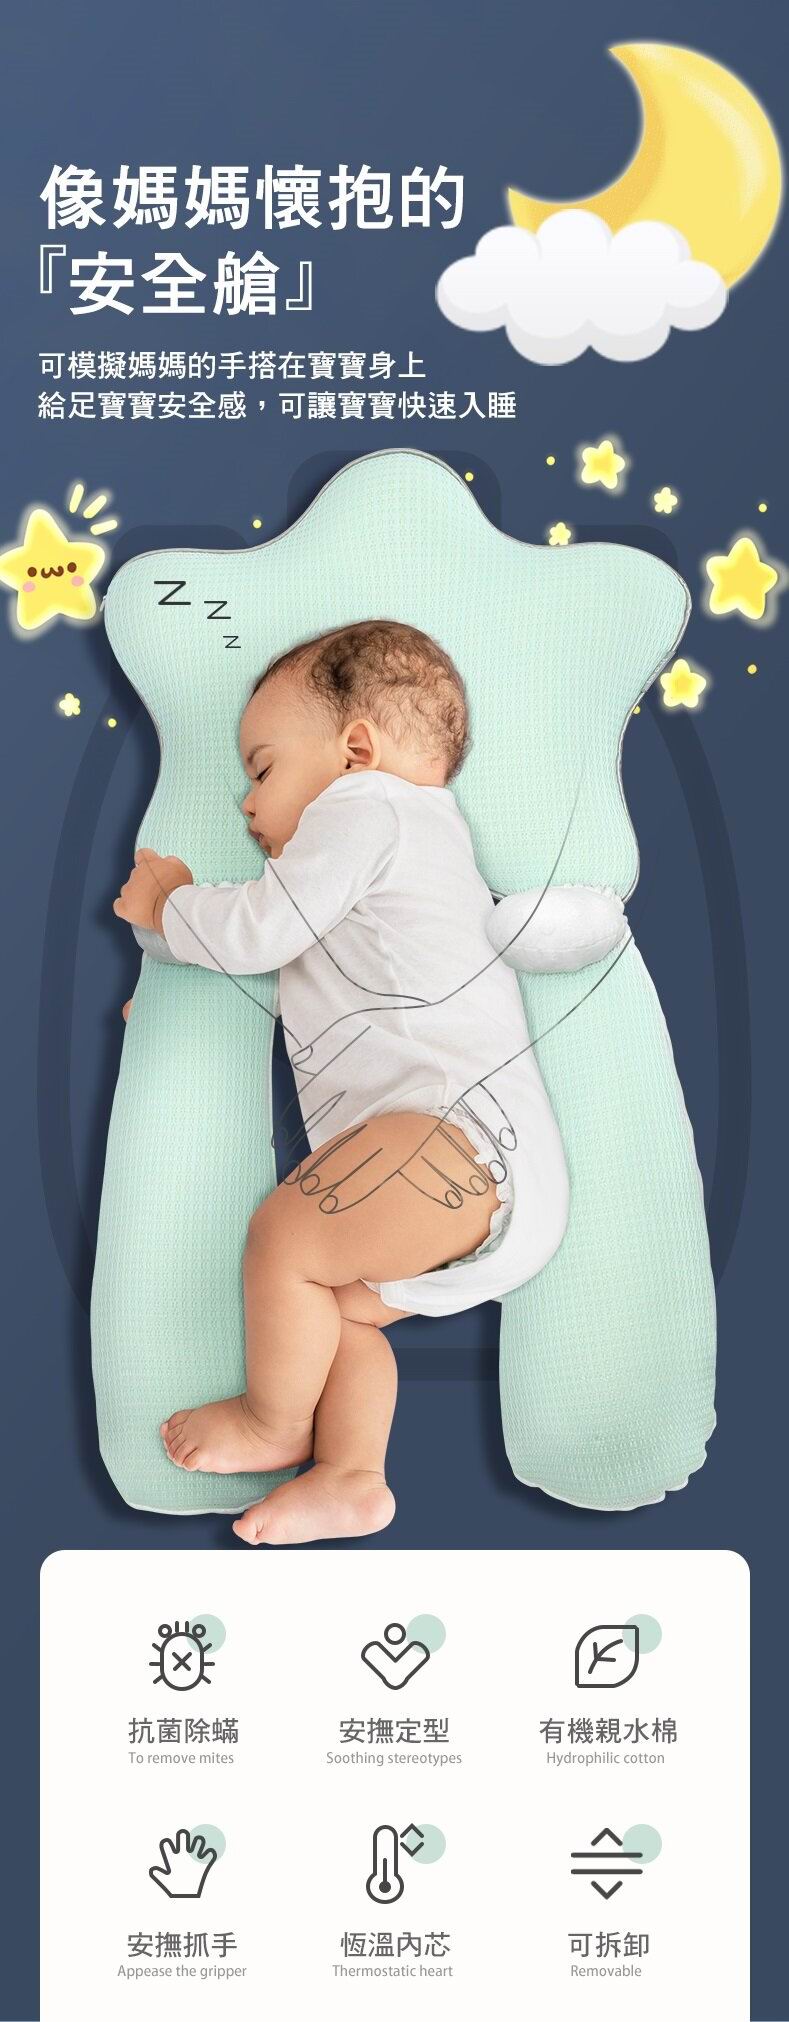 瑞士 b&h Swiss 親水棉嬰兒塑型枕頭連定位枕